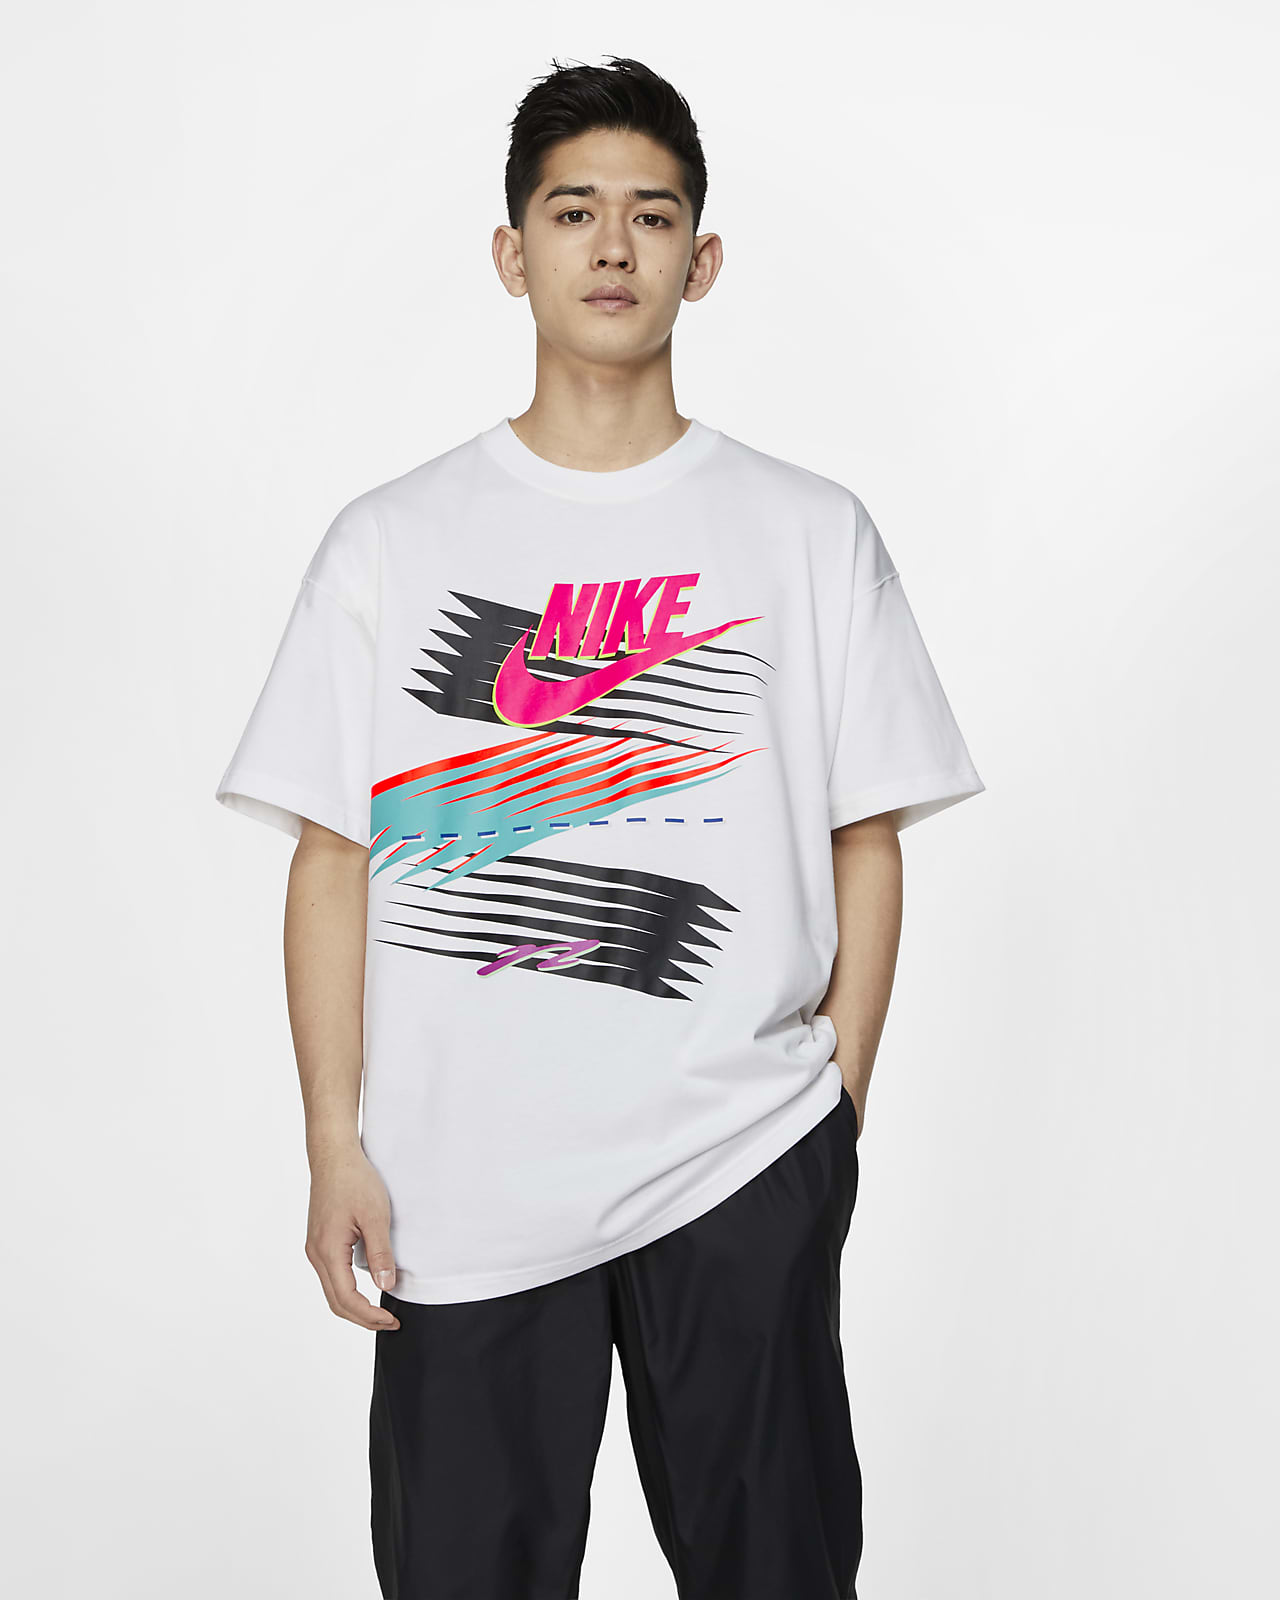 NIKE公式】ナイキ x アトモス メンズ Tシャツ.オンラインストア (通販 